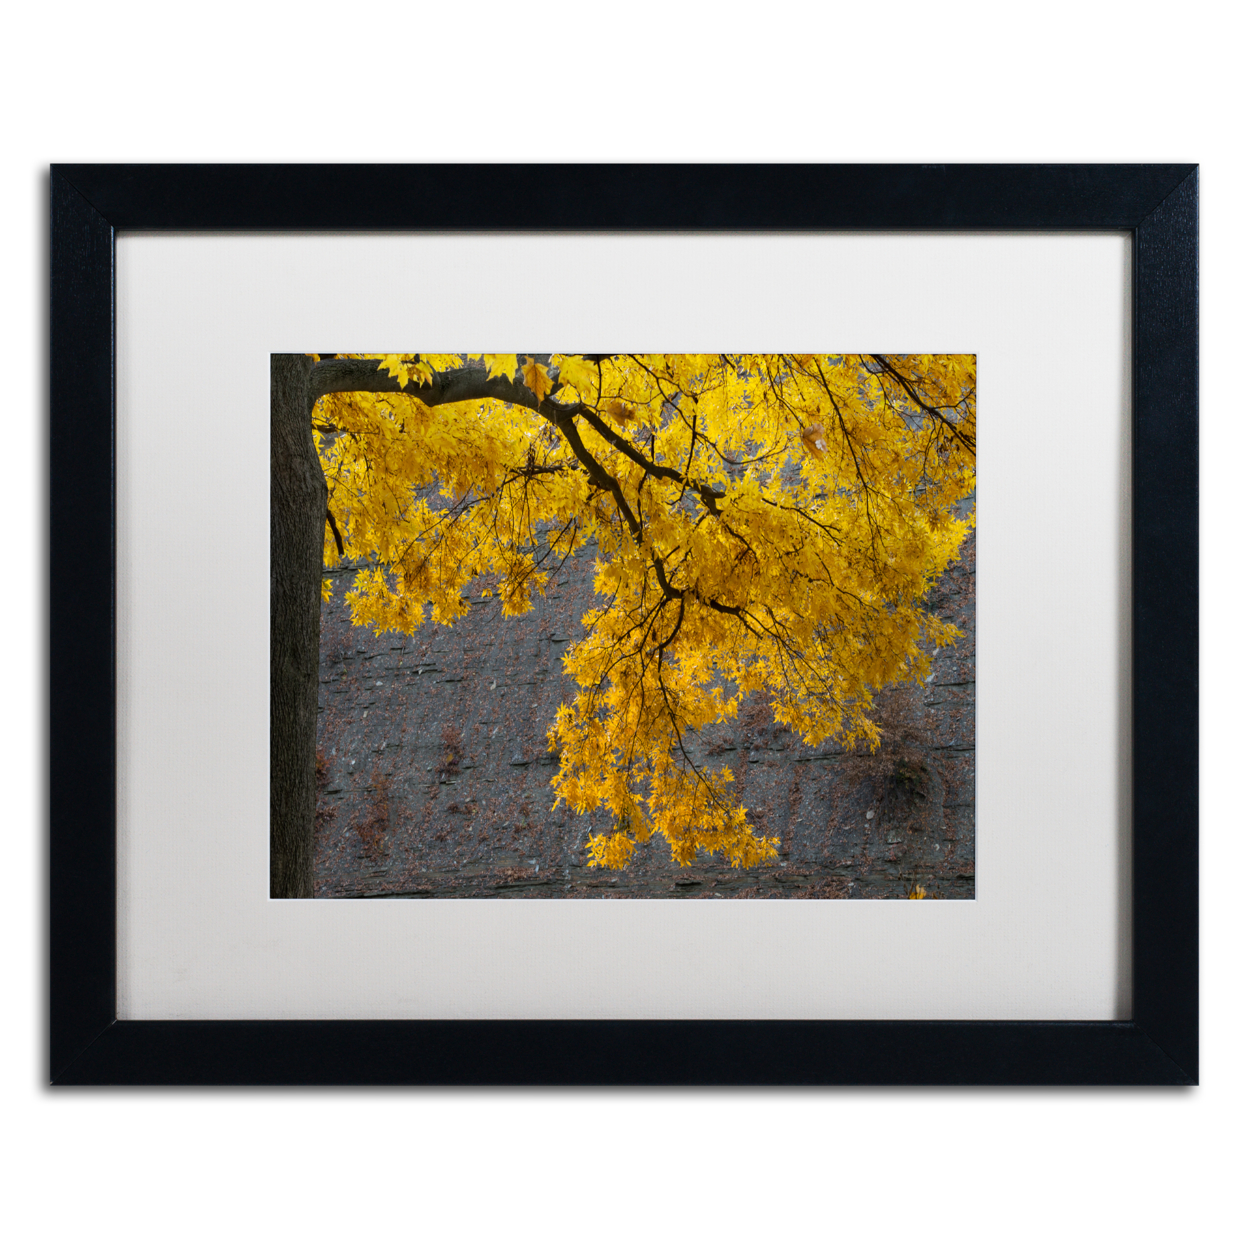 Kurt Shaffer 'Golden Autumn Color' Black Wooden Framed Art 18 X 22 Inches